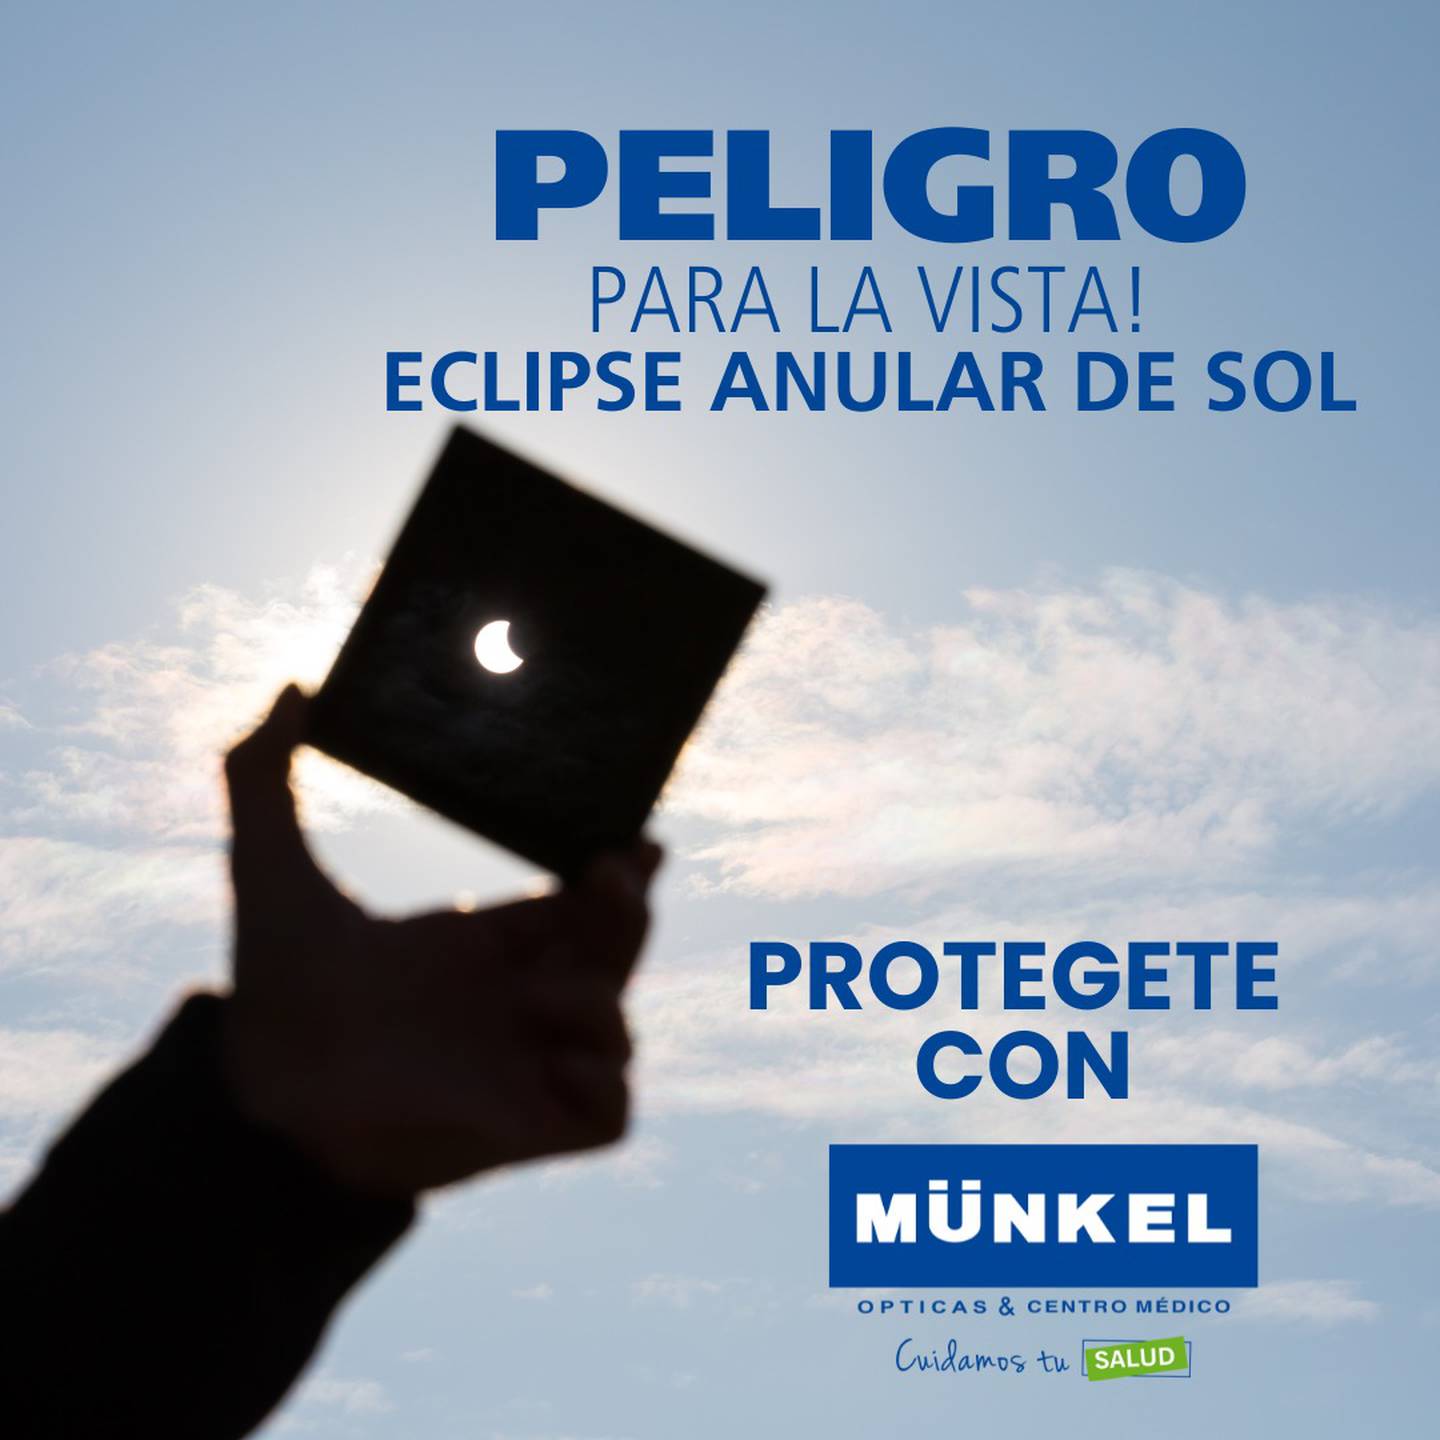 El próximo sábado 14 de octubre disfrute del eclipse con la protección de Ópticas Münkel